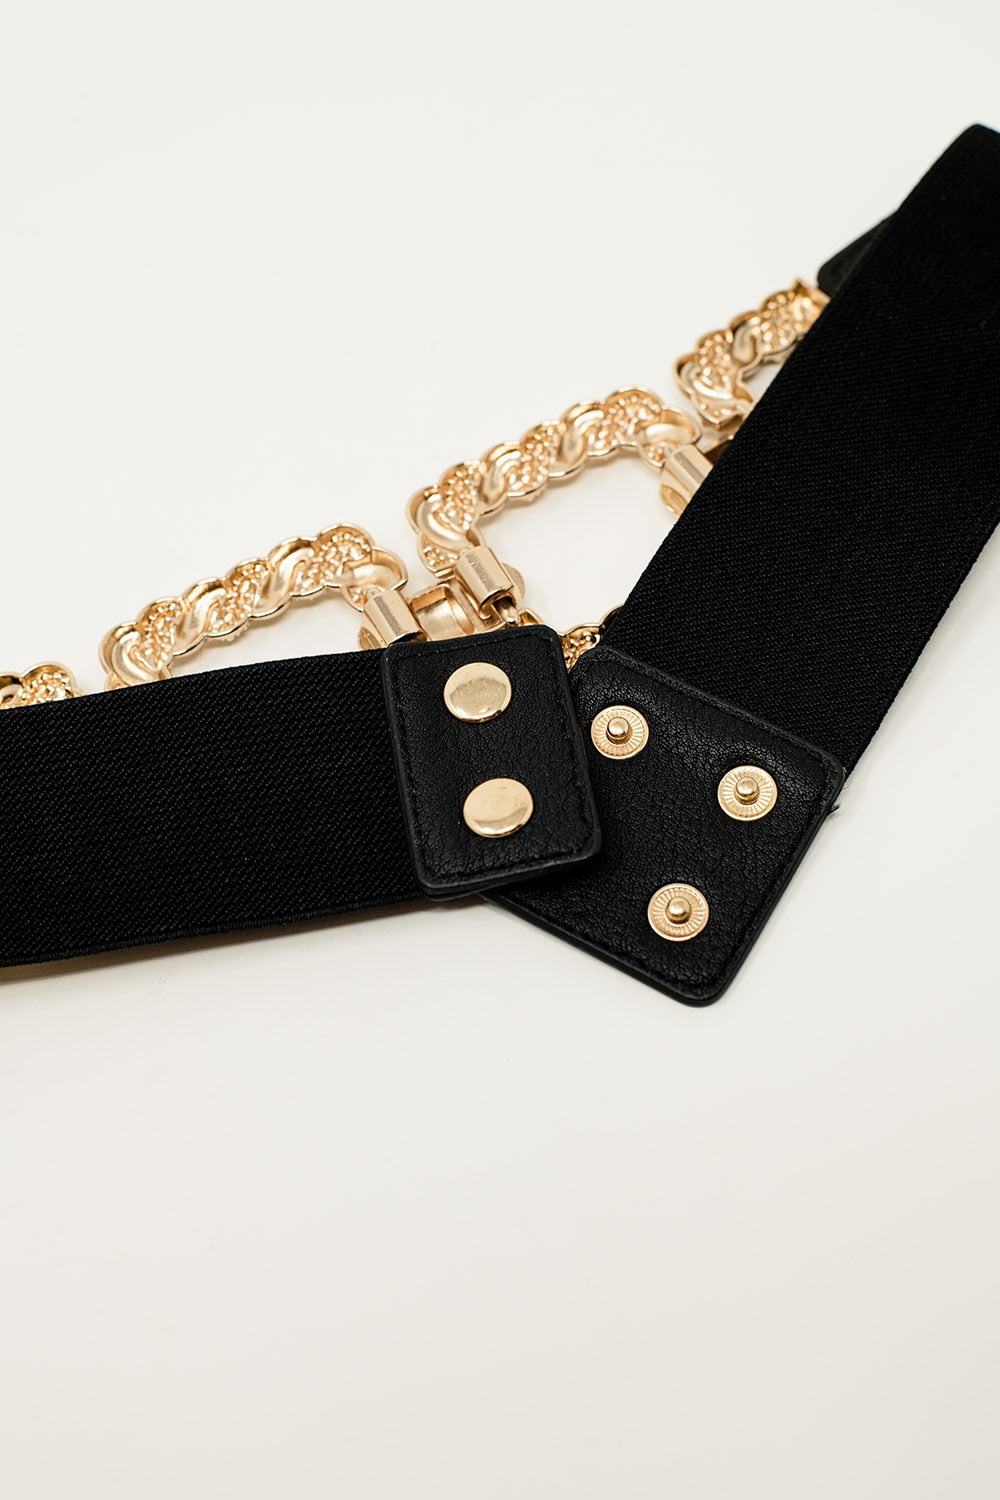 Cinturón elástico ajustado negro detalle trenzado metálico